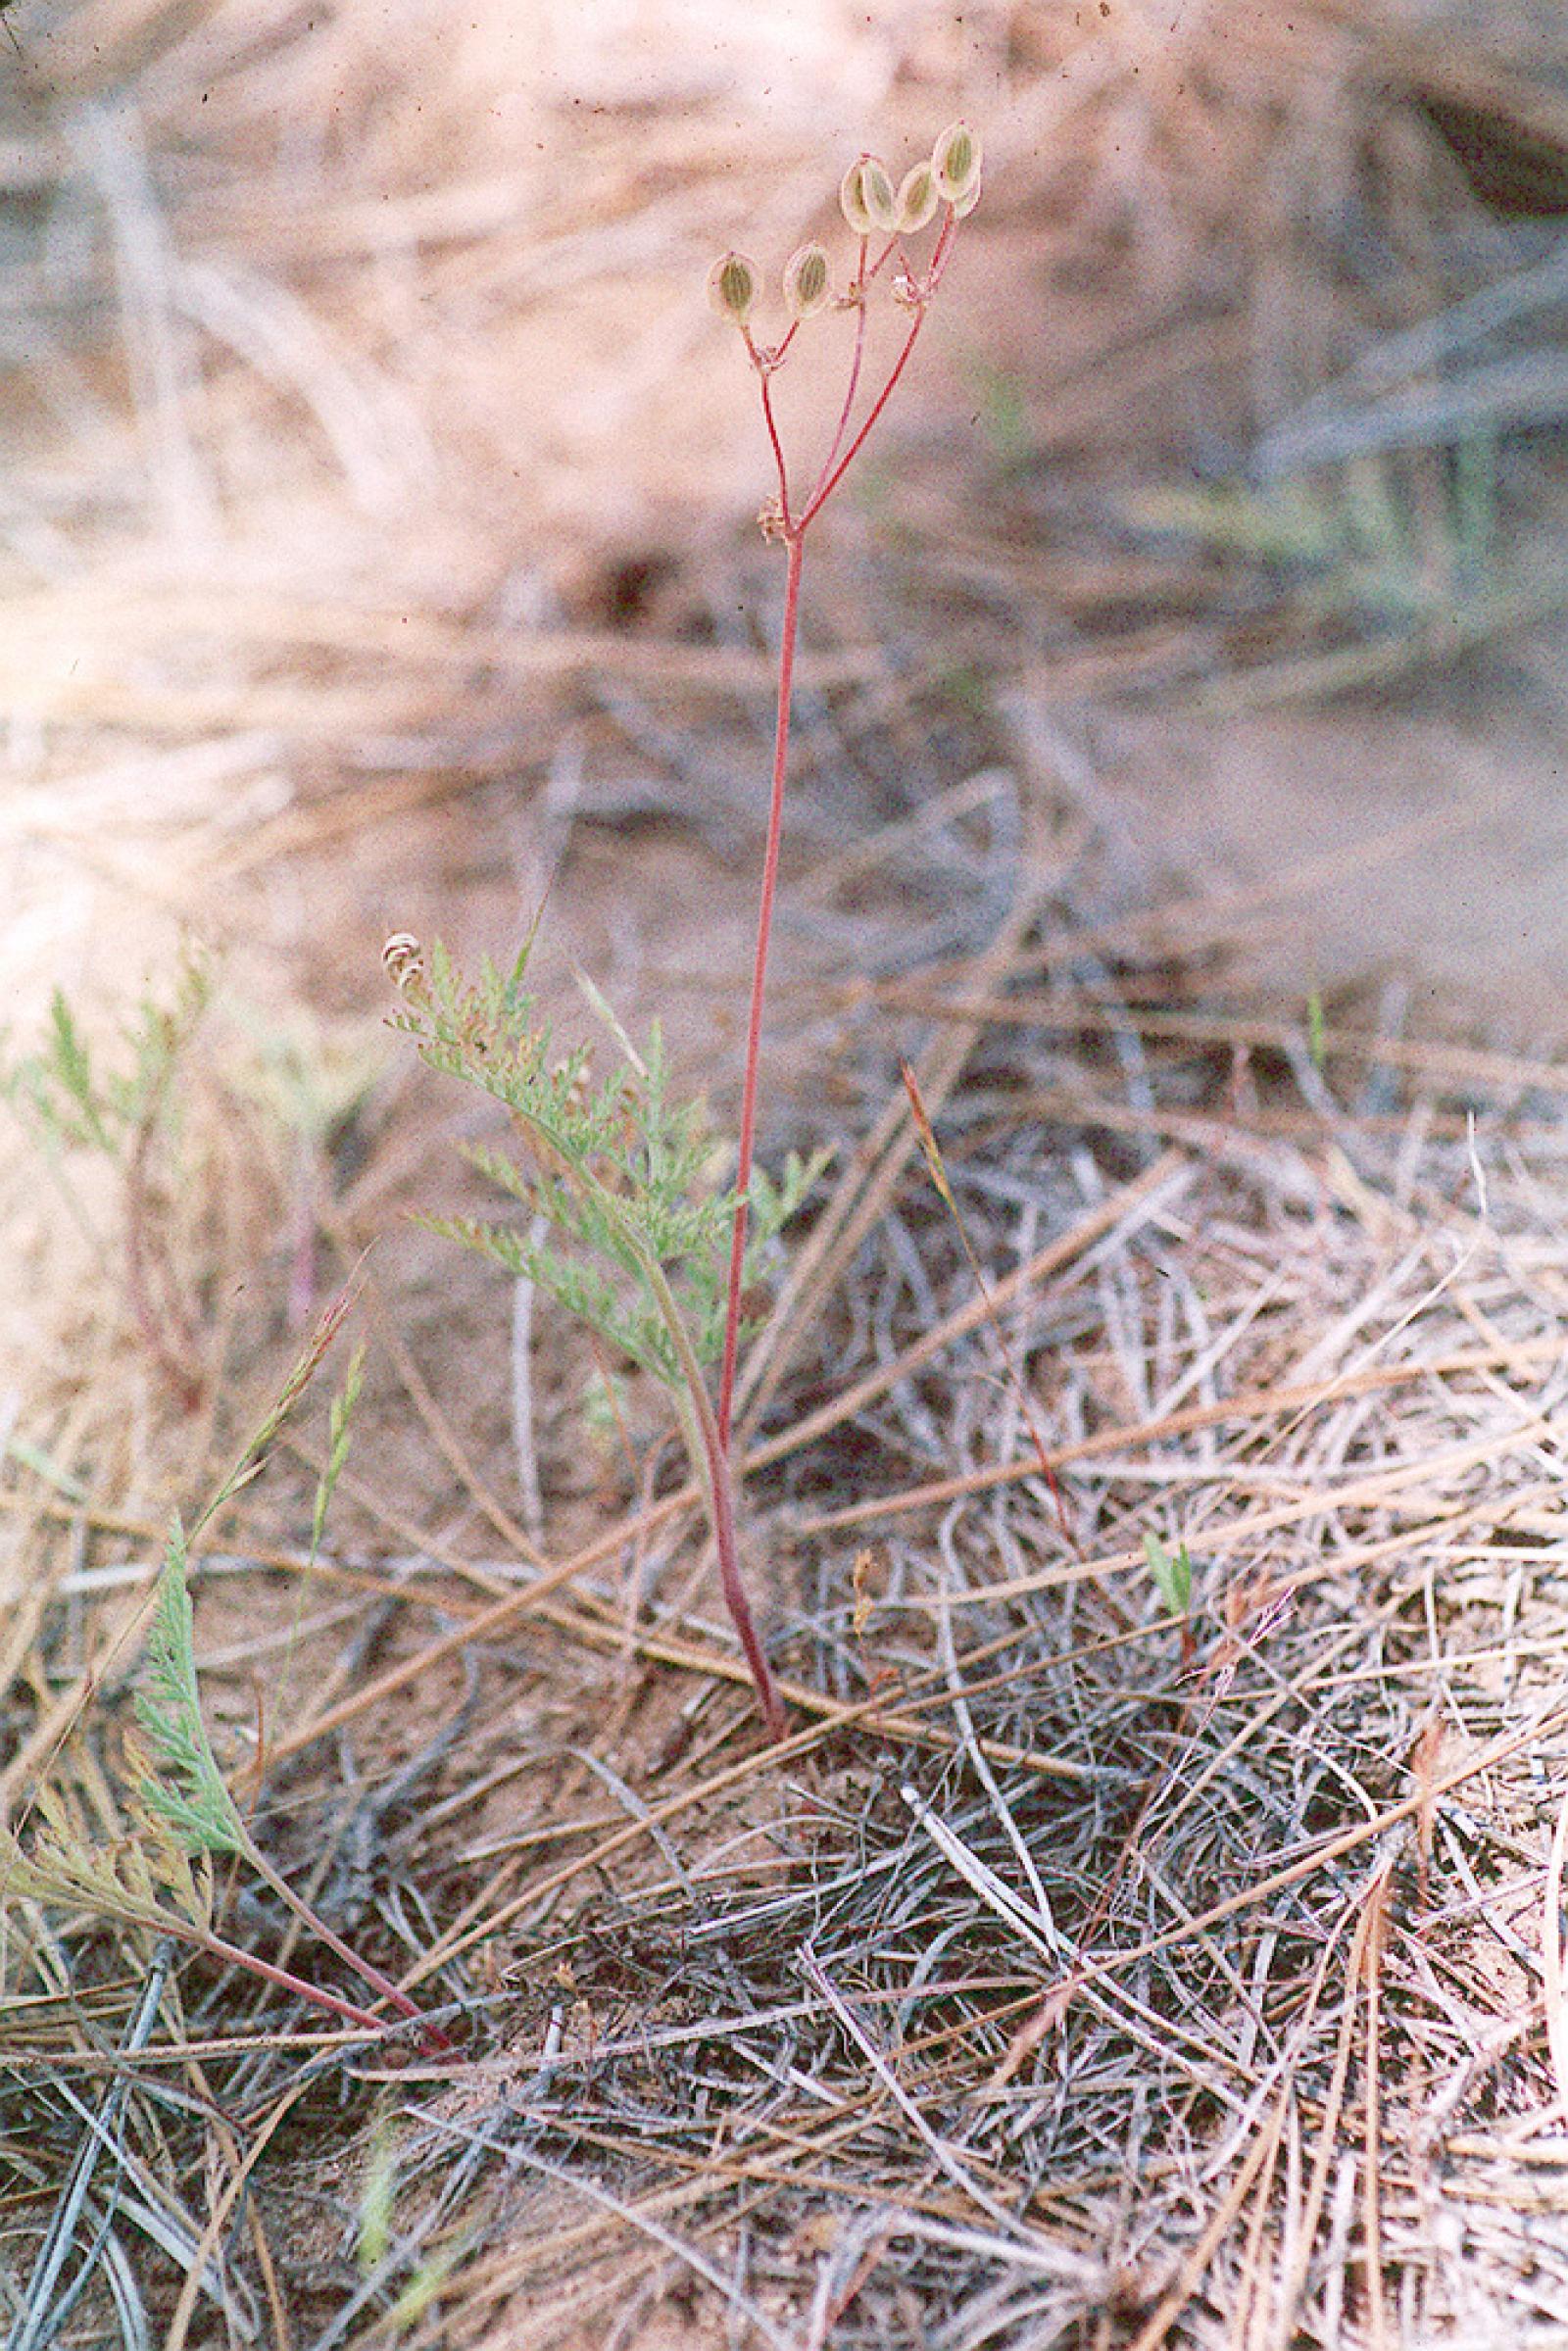 Cogswellia macrocarpa image